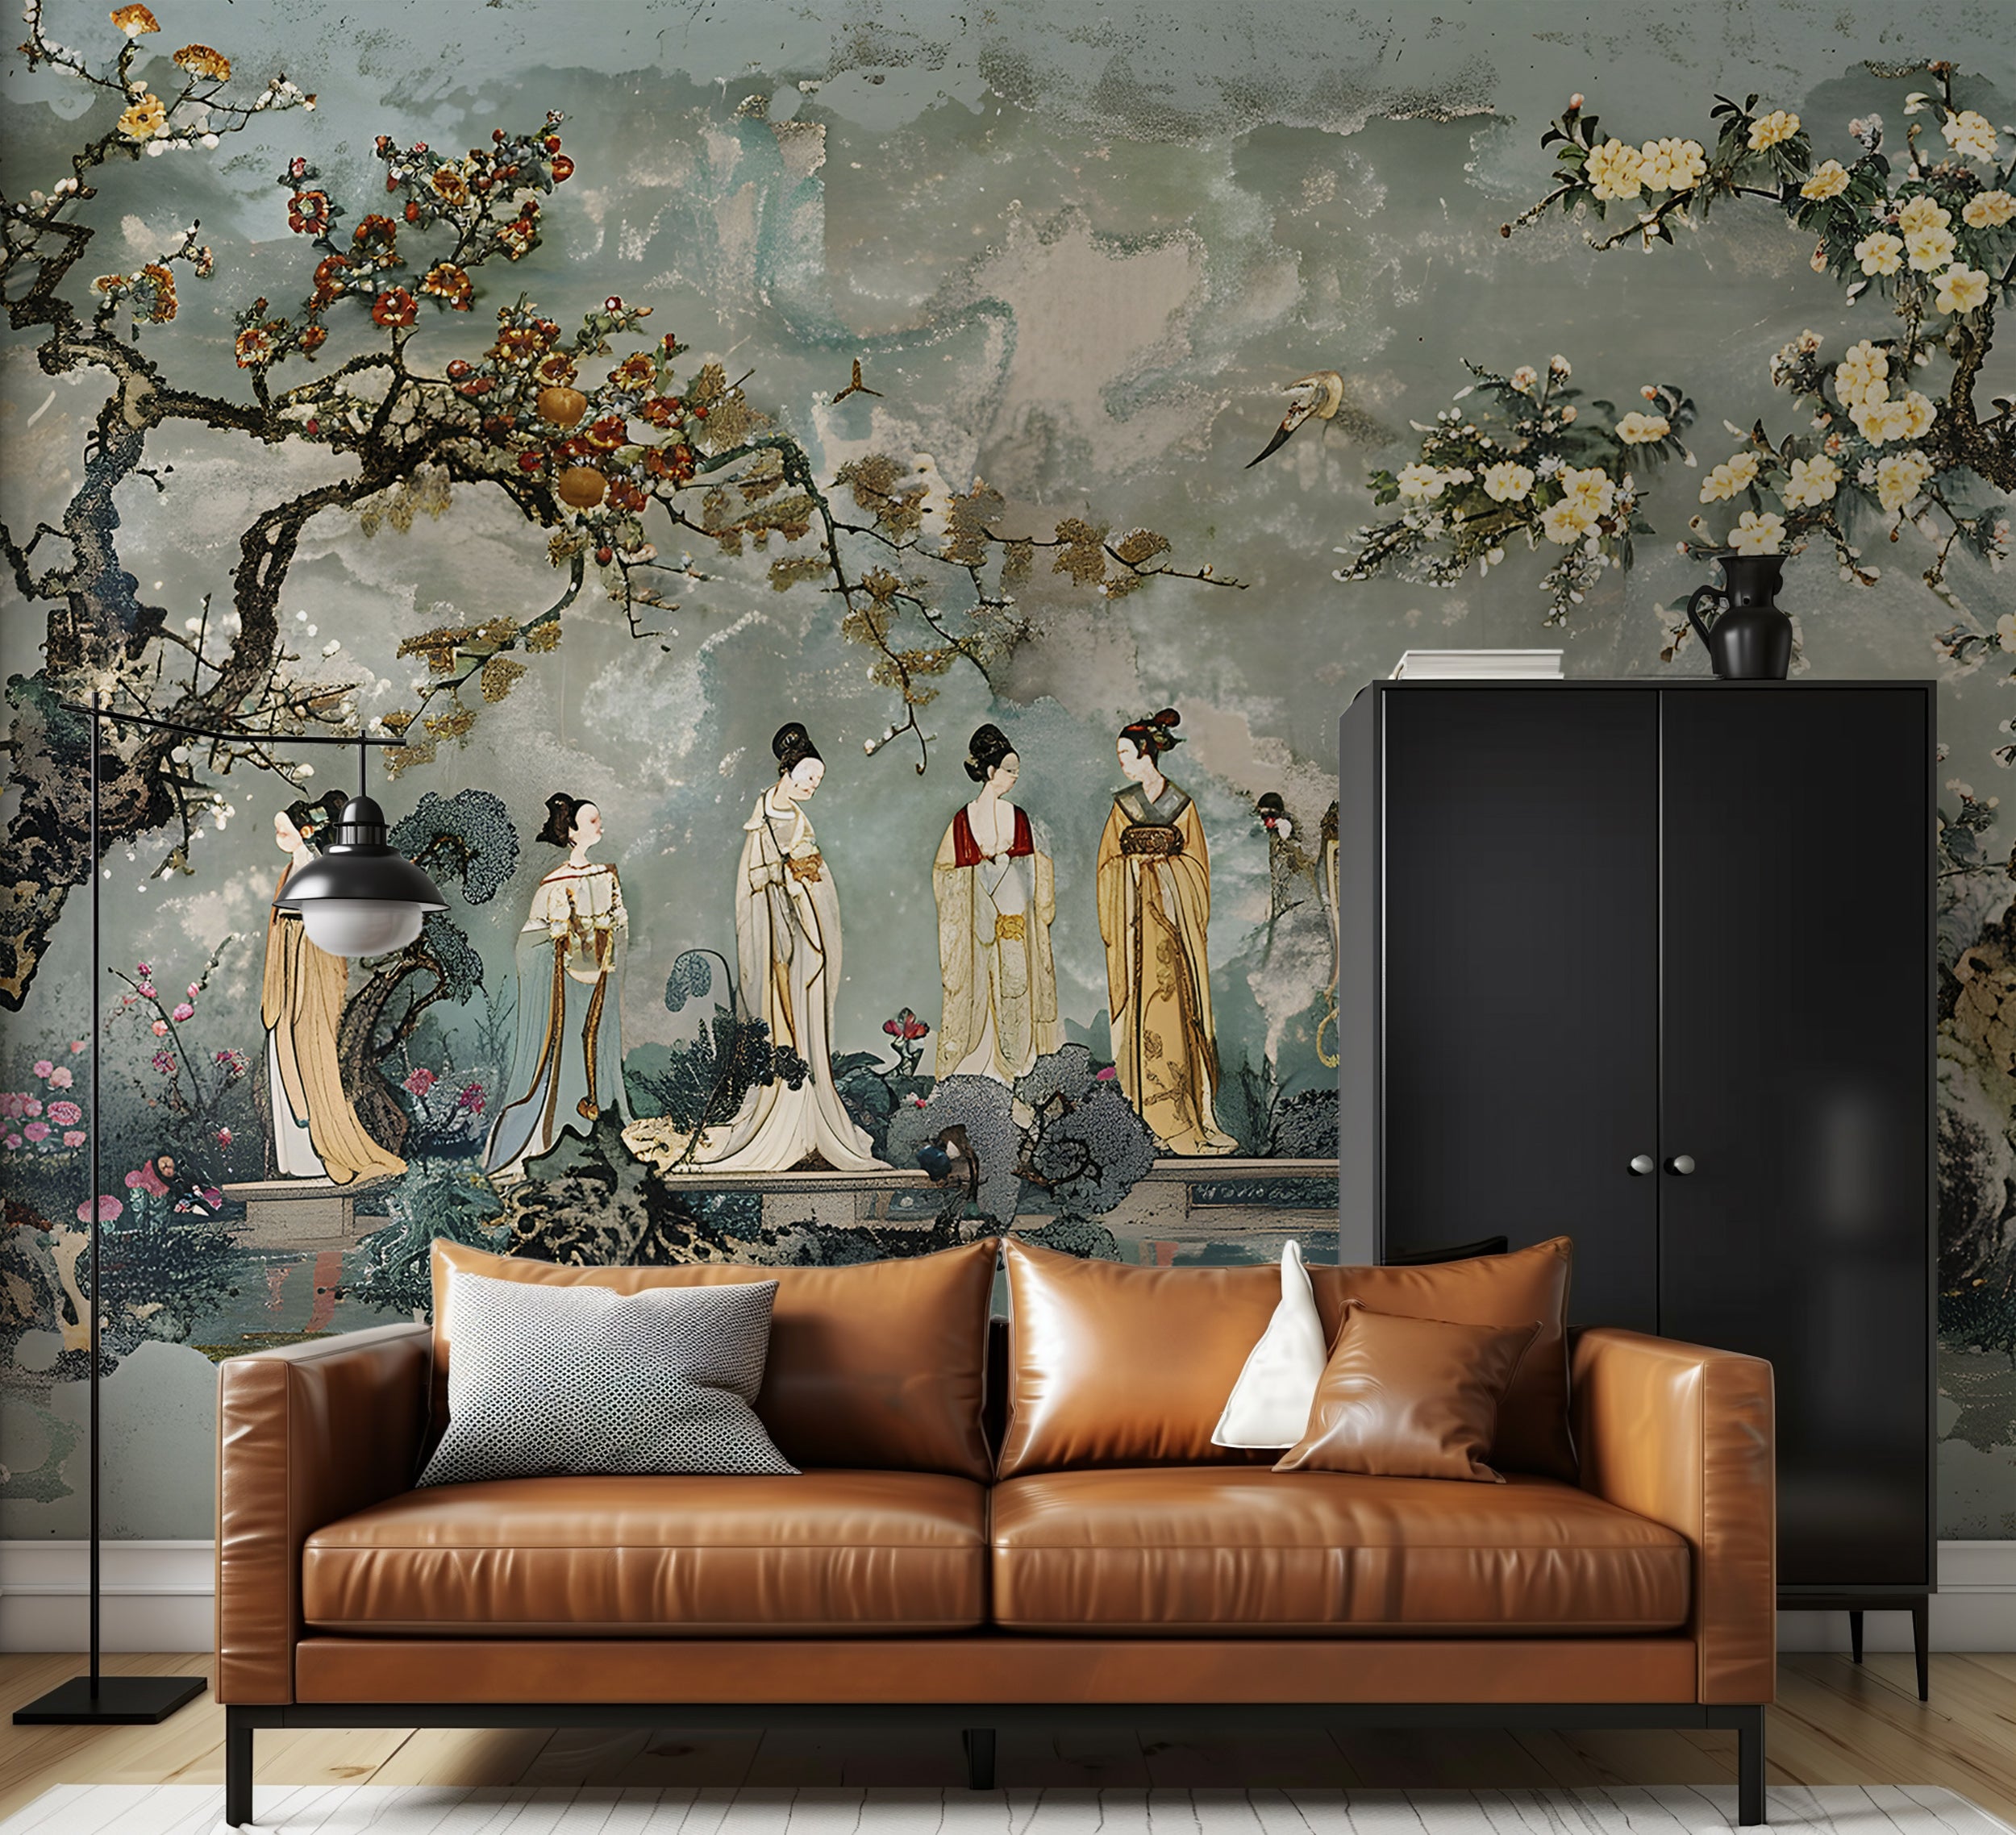 Elegant Japanese art mural